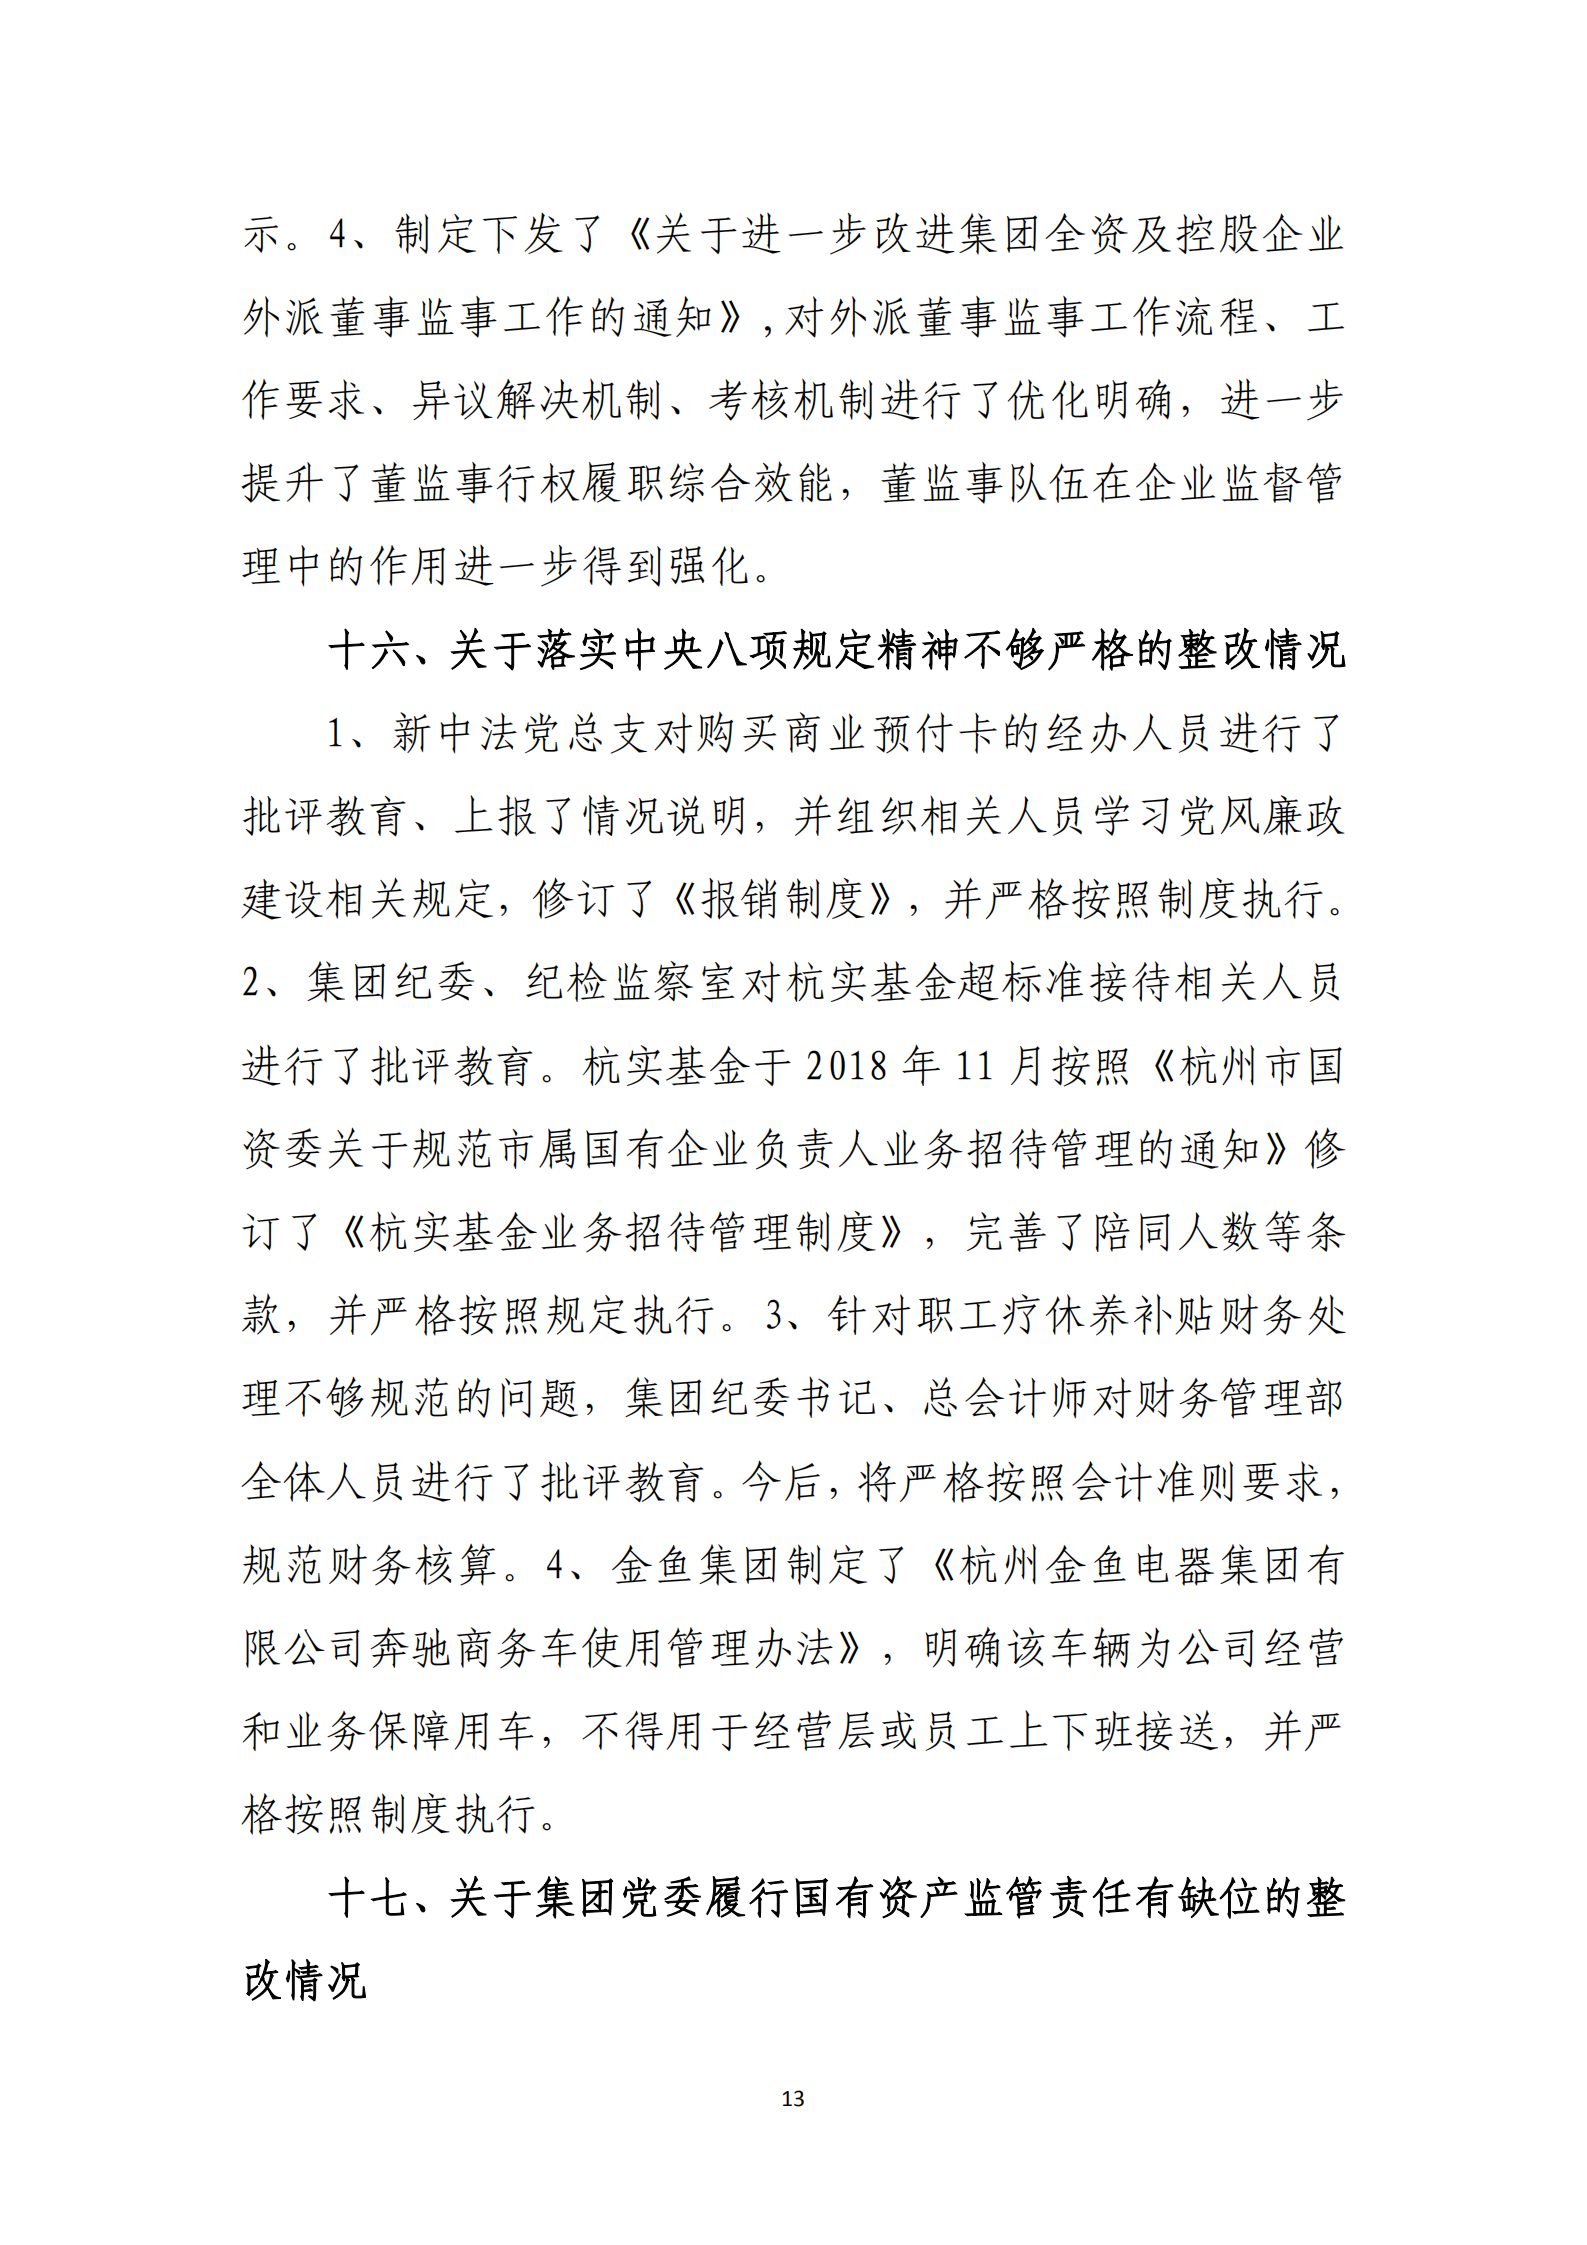 博乐体育网页【中国】有限公司党委关于巡察整改情况的通报_12.png